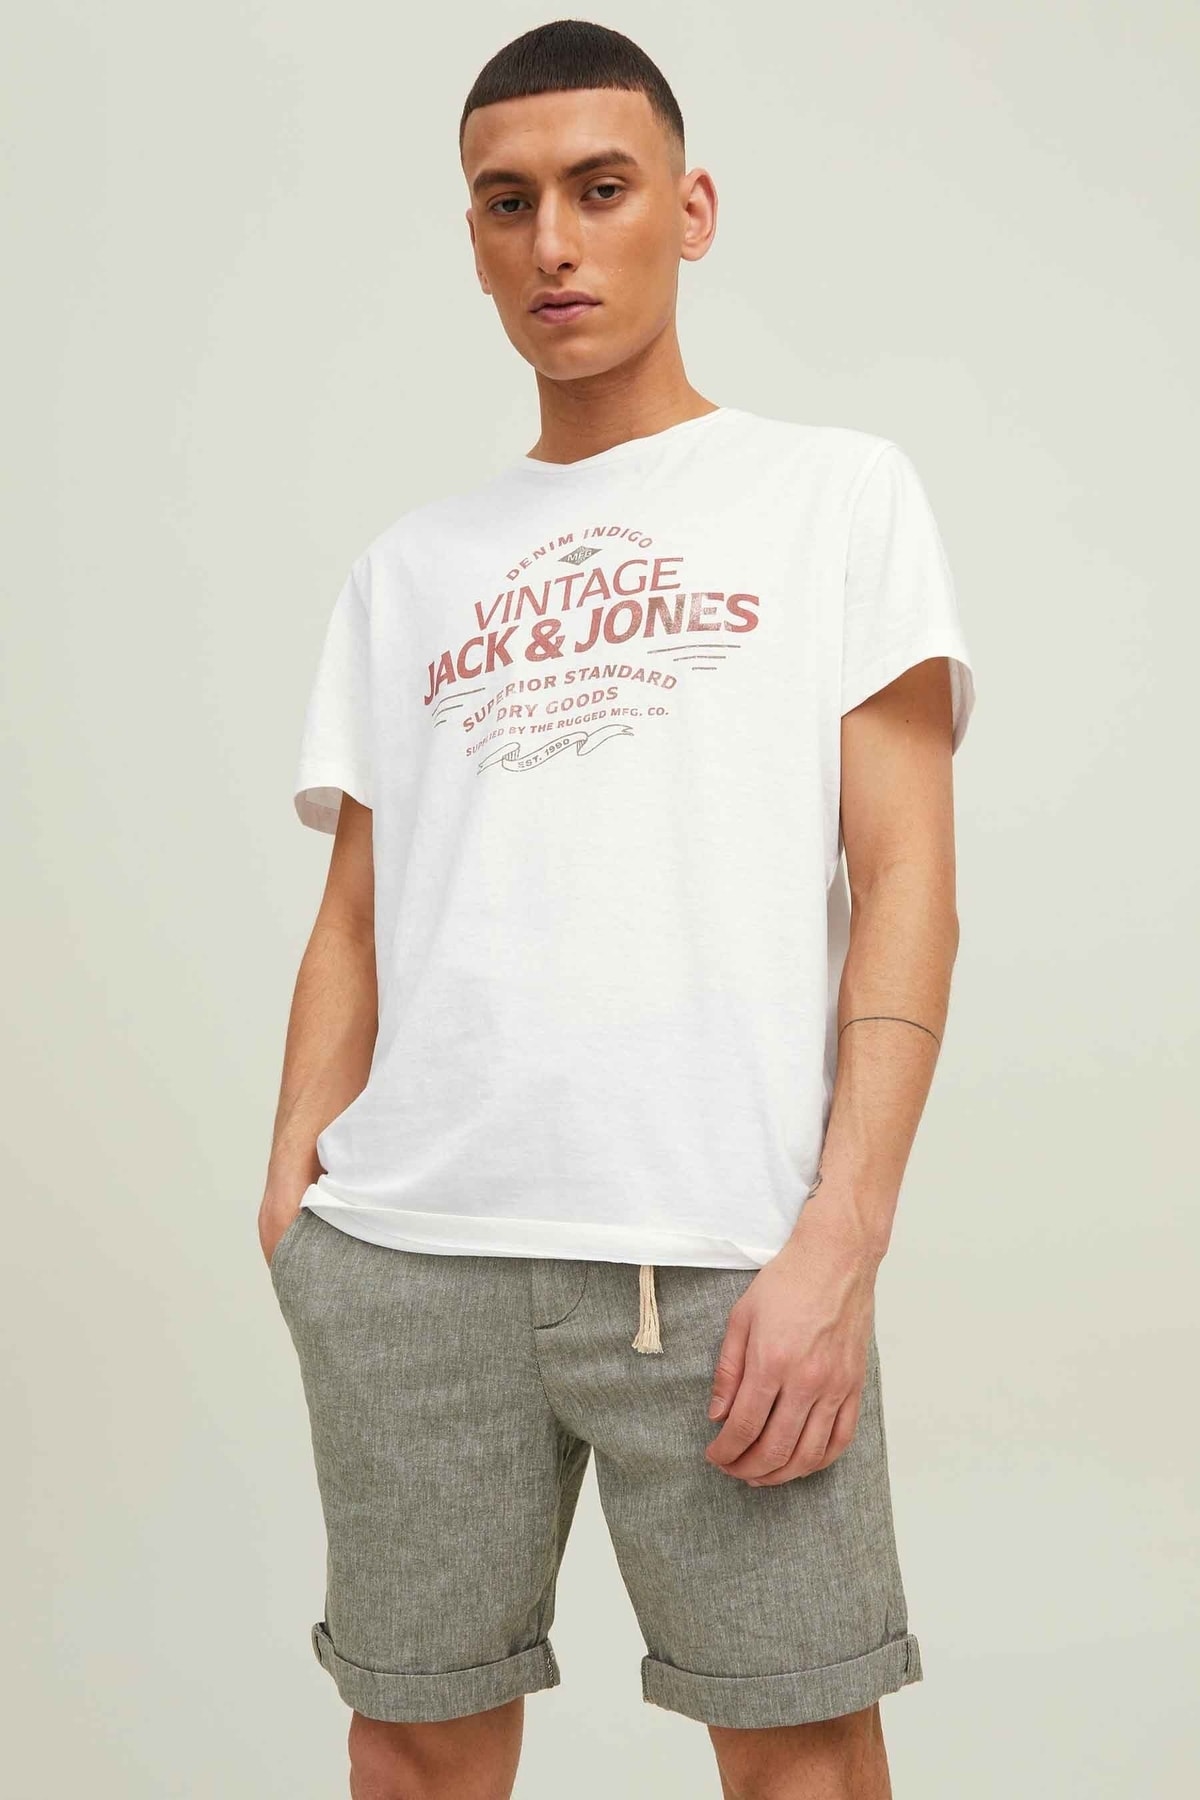 تی شرت مردانه  جک اند جونز Jack & Jones (برند دانمارک)